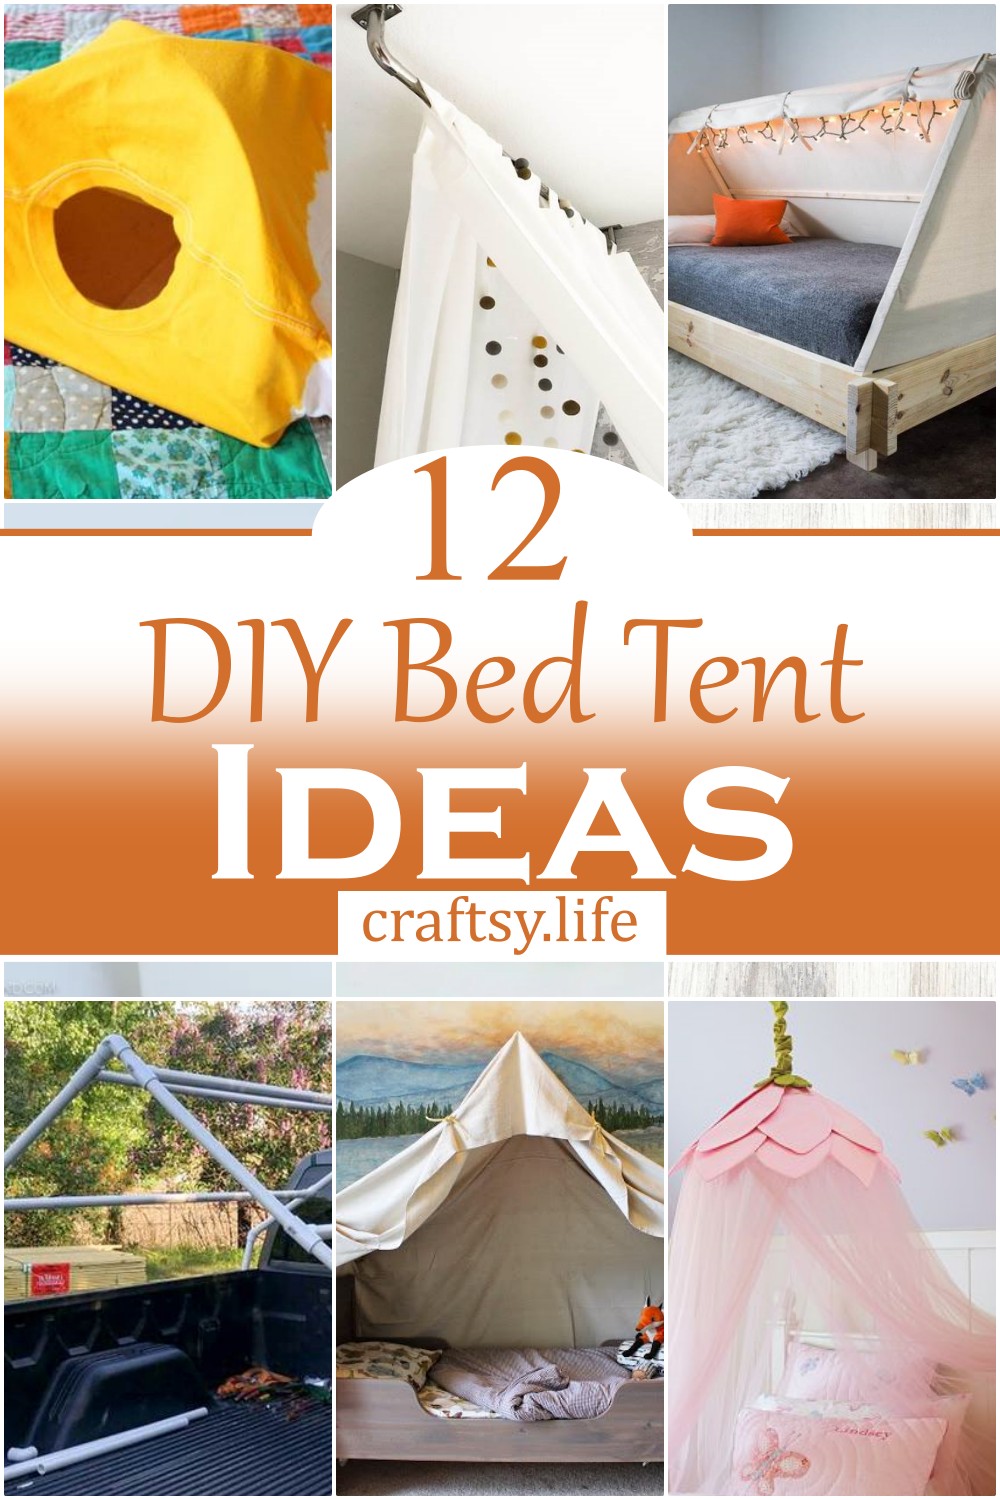 DIY Bed Tent Ideas